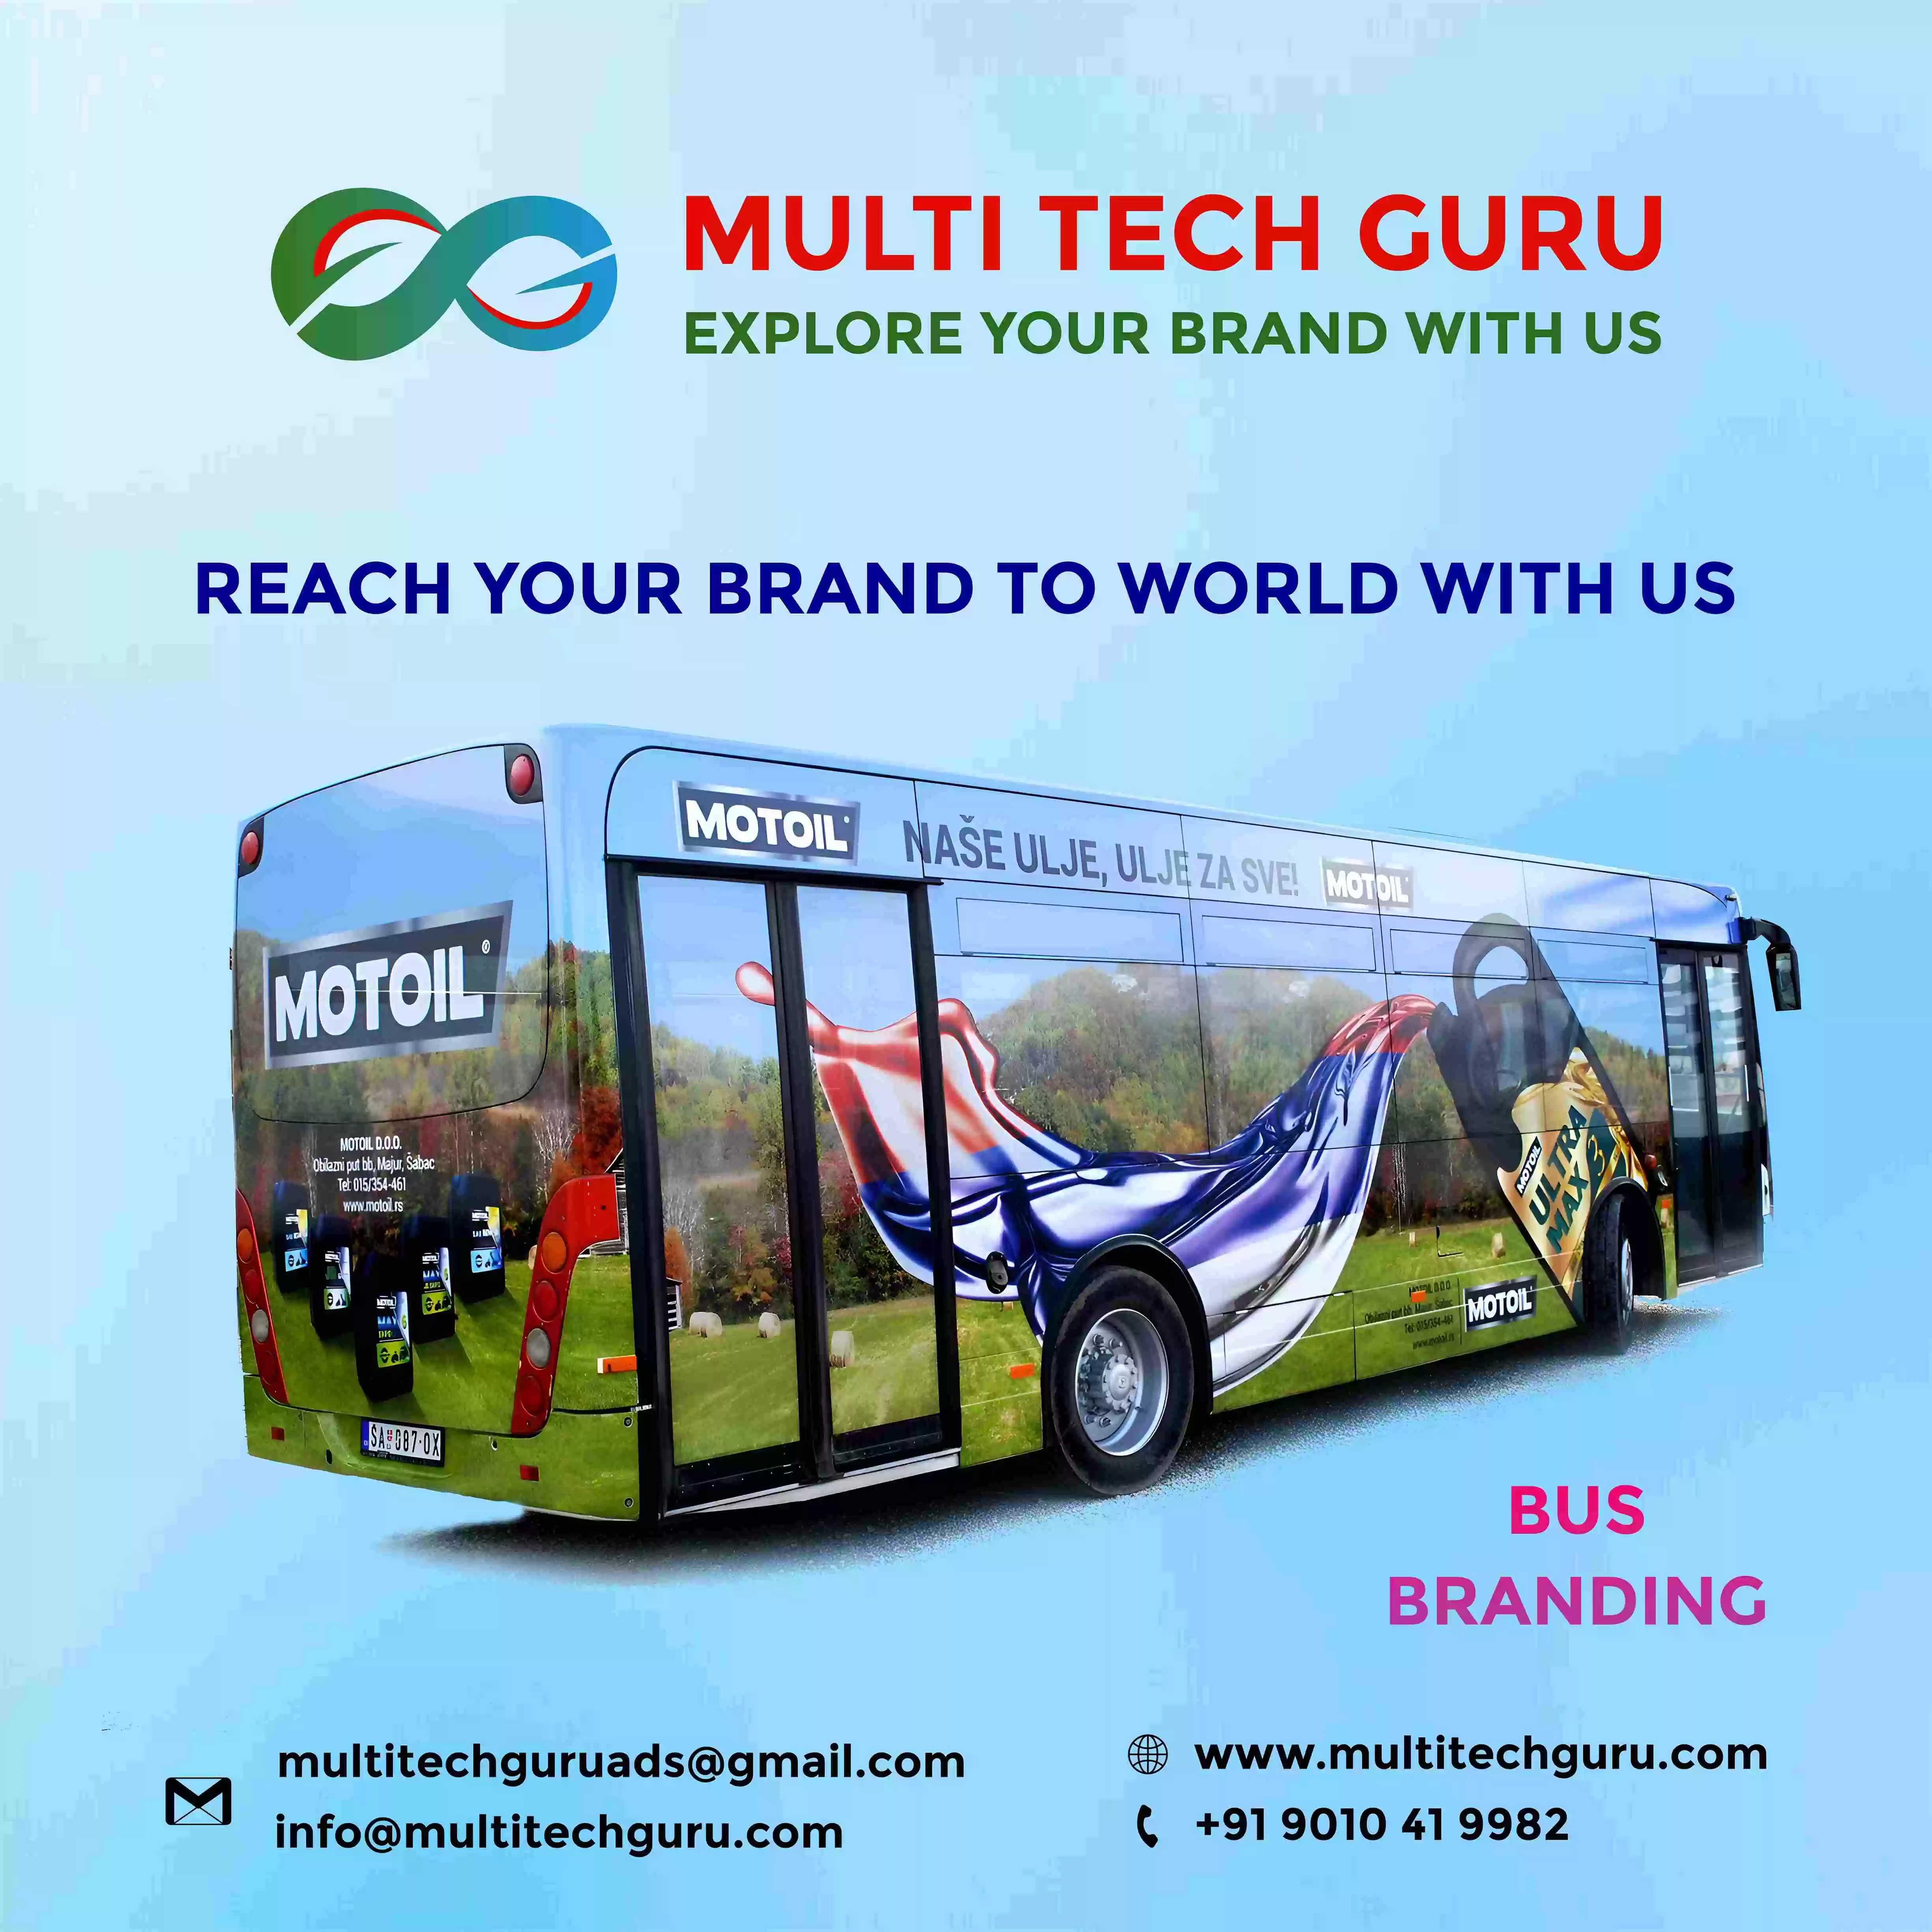 Bus Branding - advertising-marketing-Multitechguru.com-9010419982-Outdoor media advertising - Print Media Services